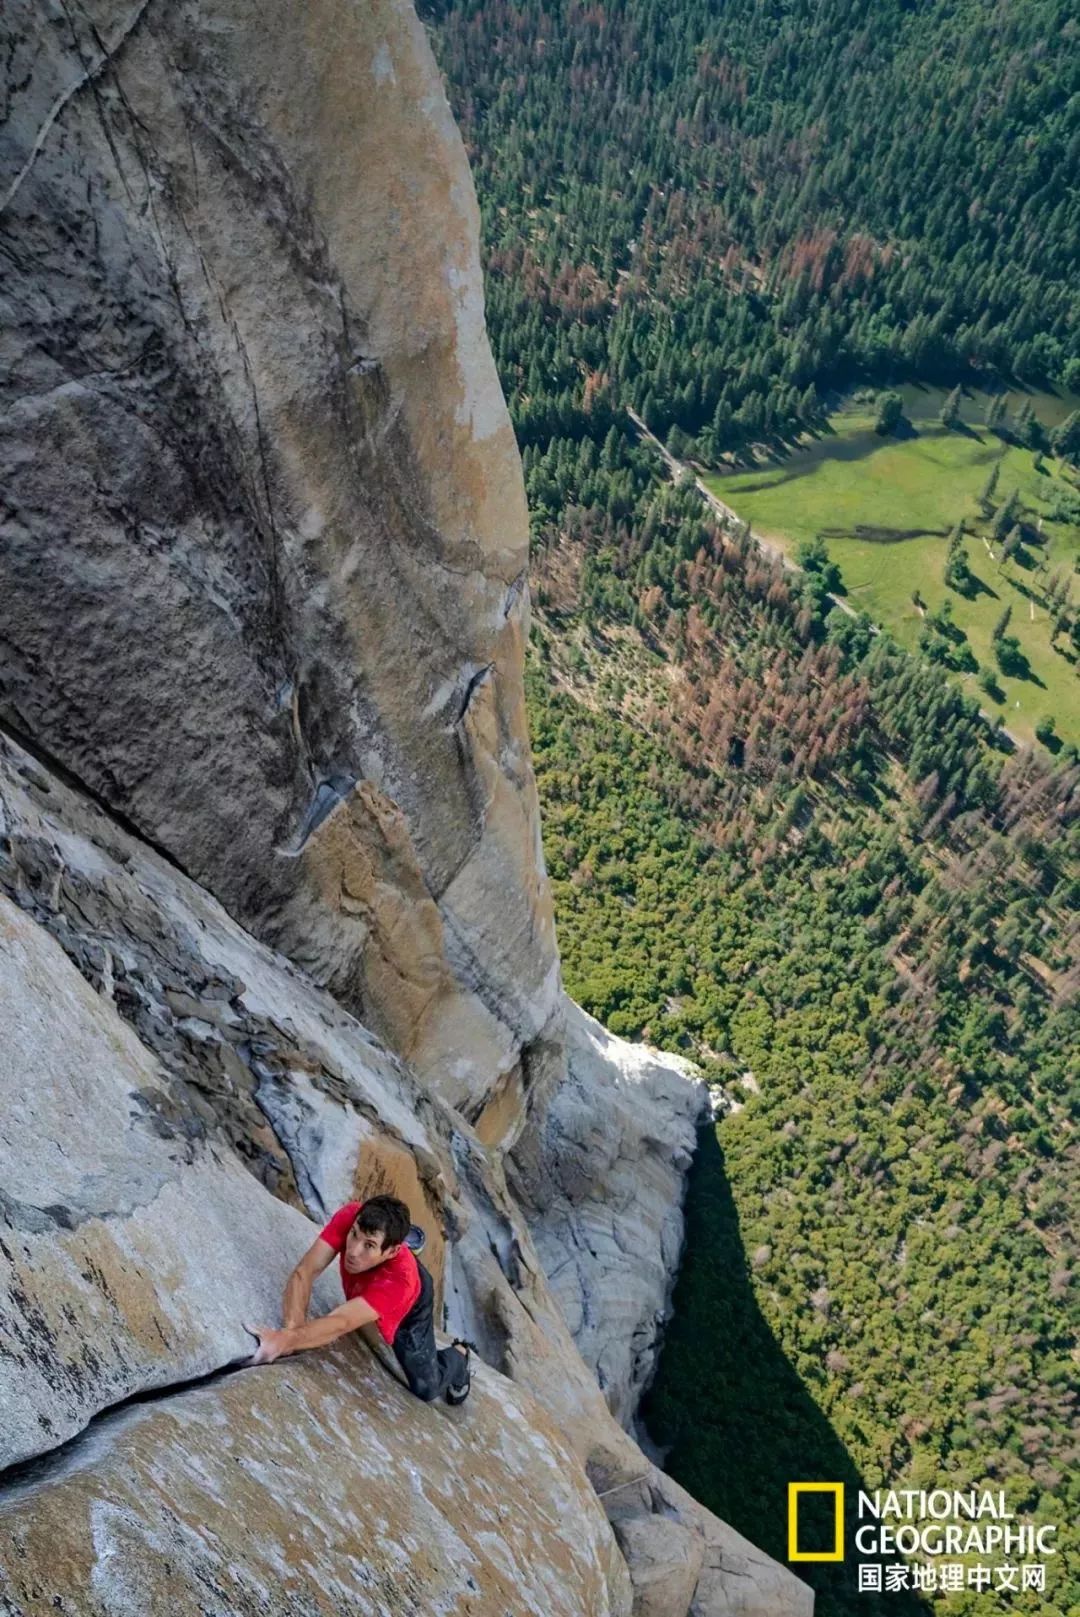 《徒手攀岩》勇夺奥斯卡最佳纪录片:生活亦如此,不要控制恐惧,要消除